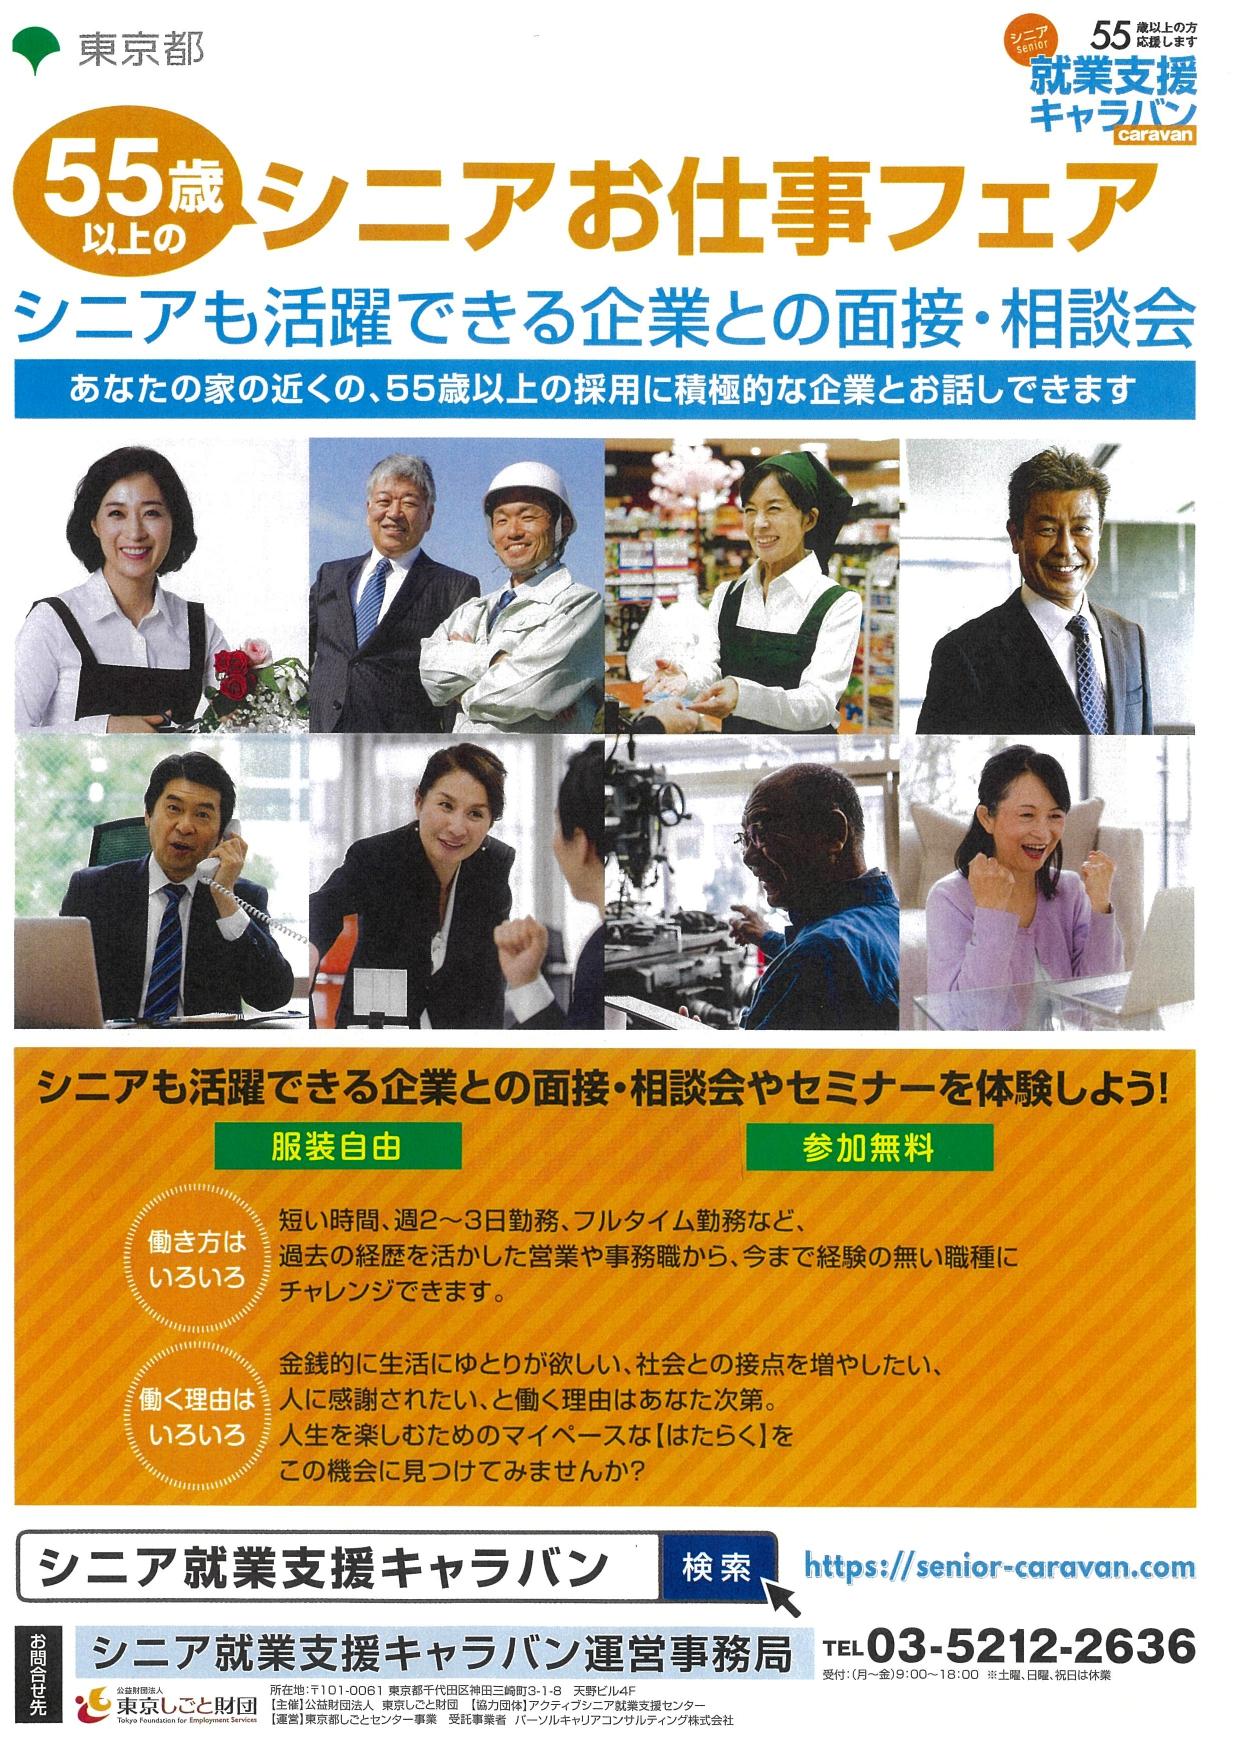 シニア就業支援キャラバン（シニアお仕事フェア） 東京しごとセンター